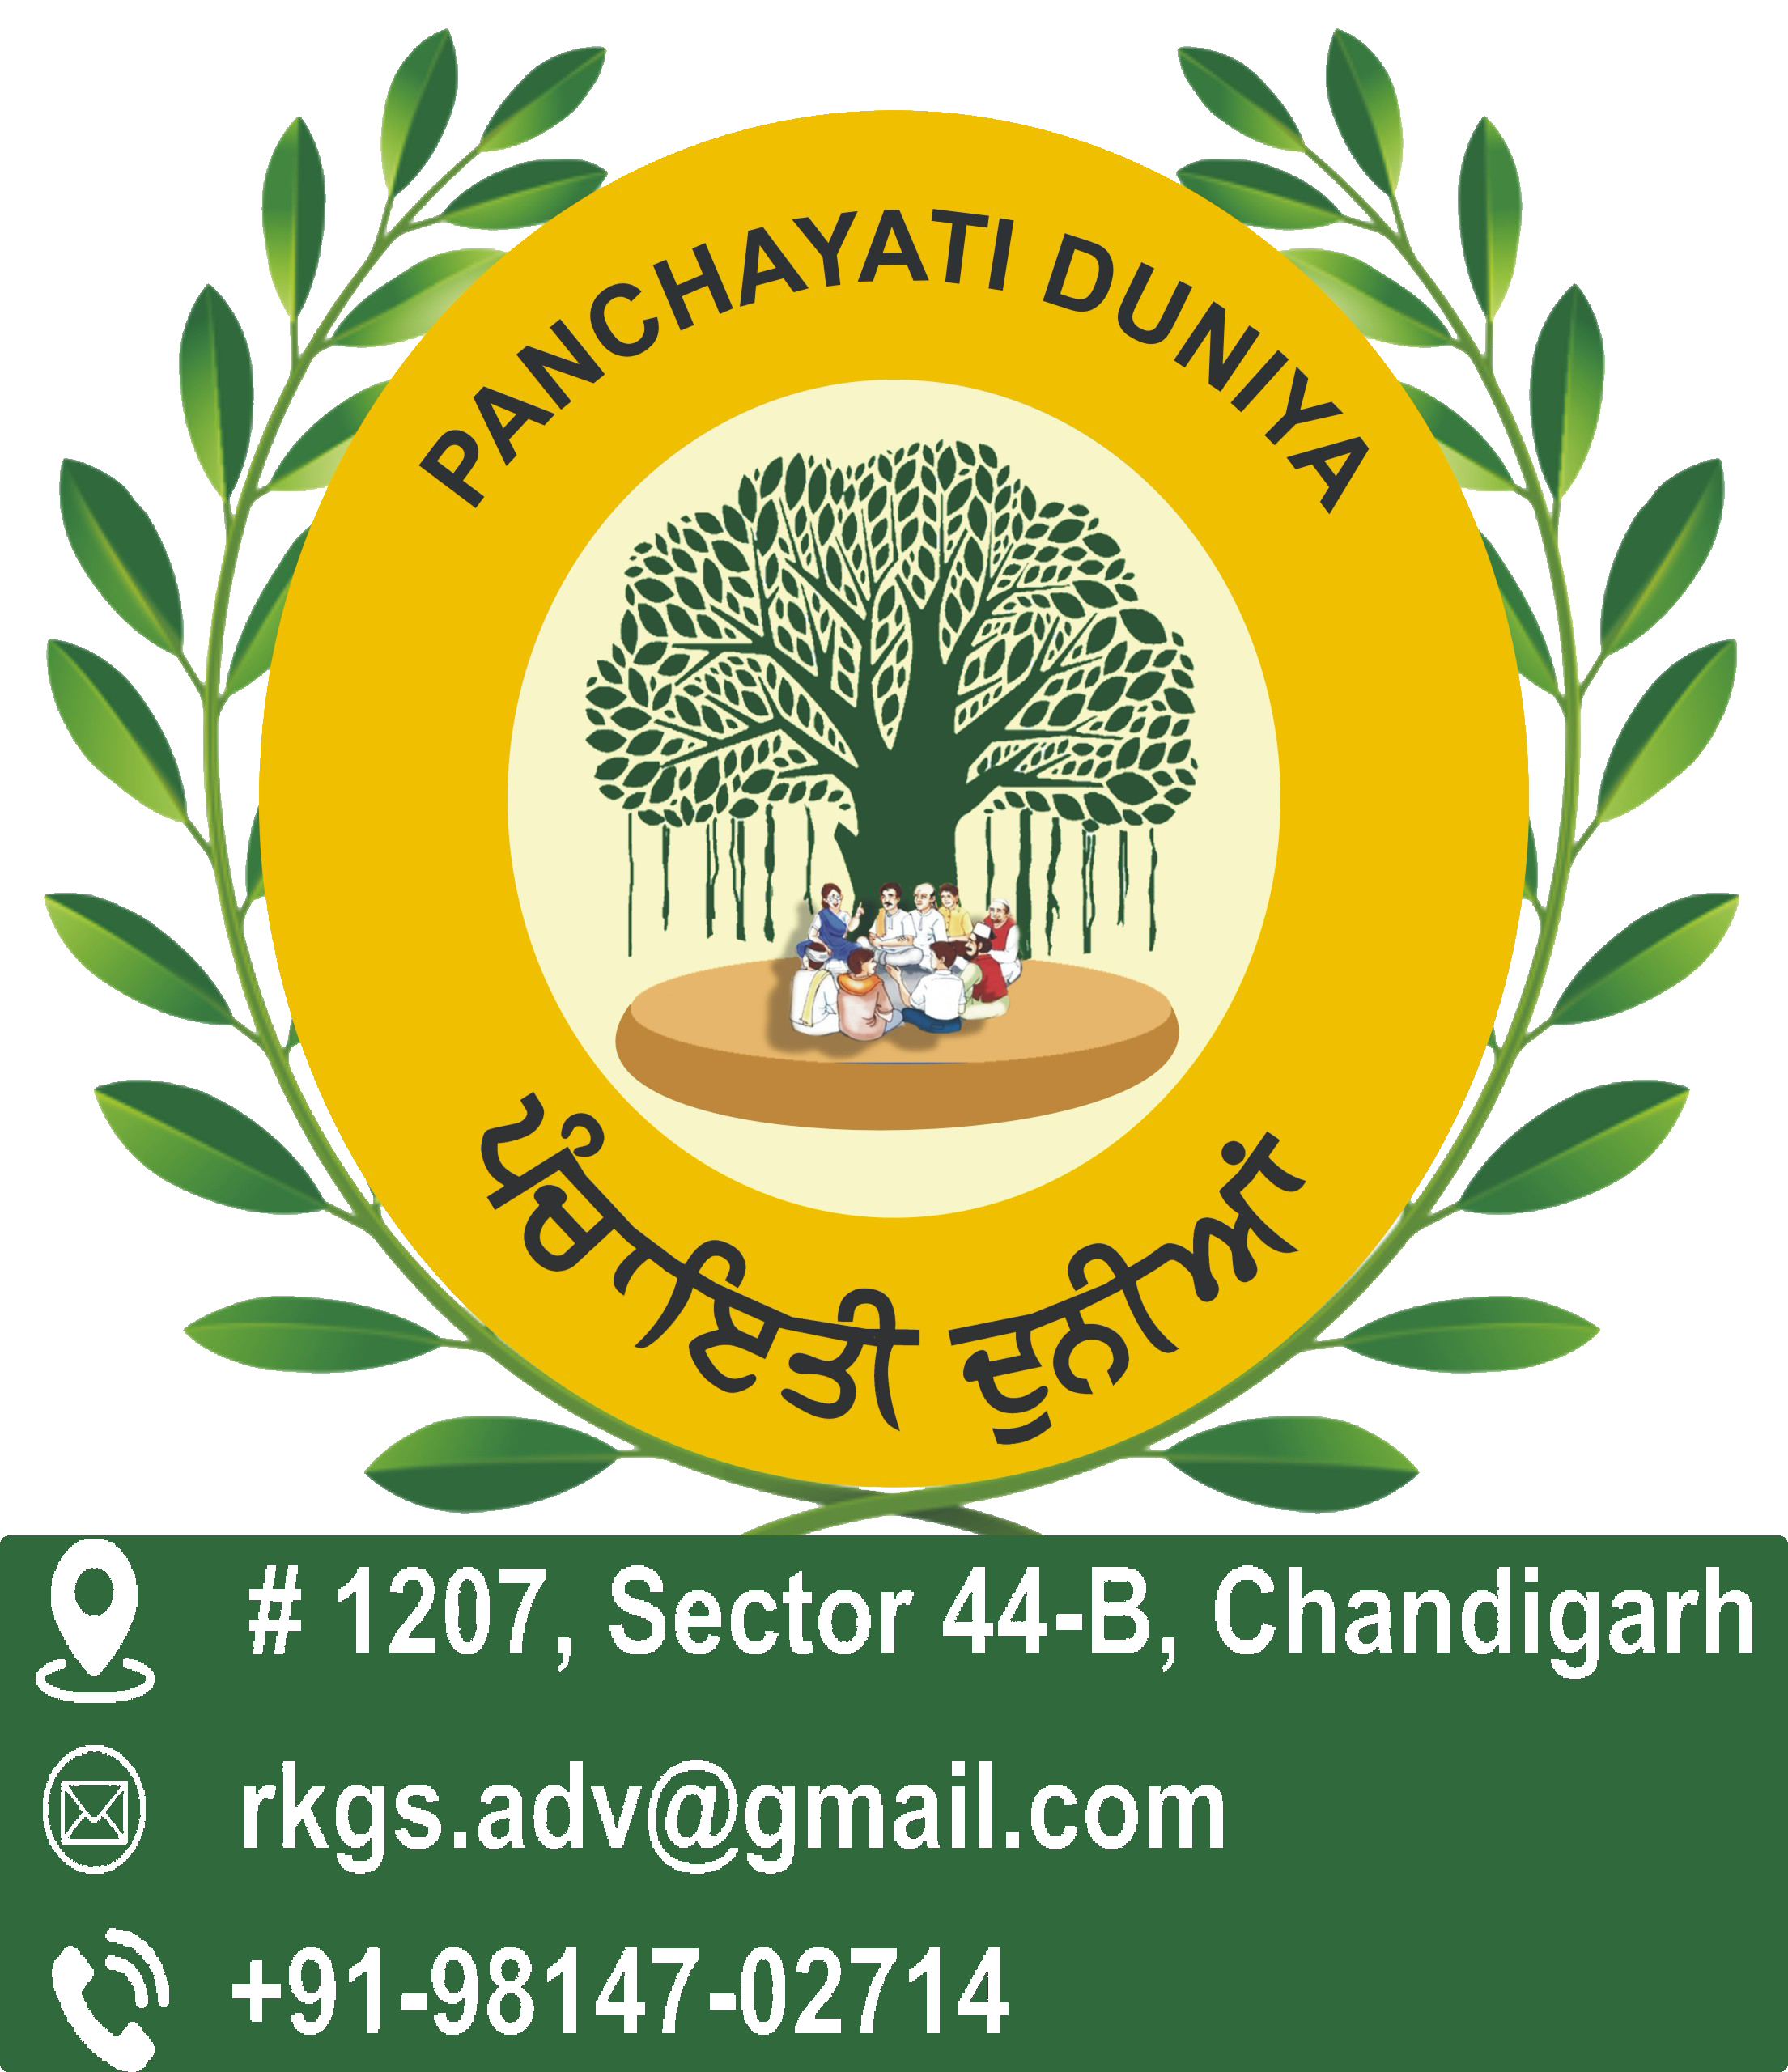 Panchayatiduniya Laws